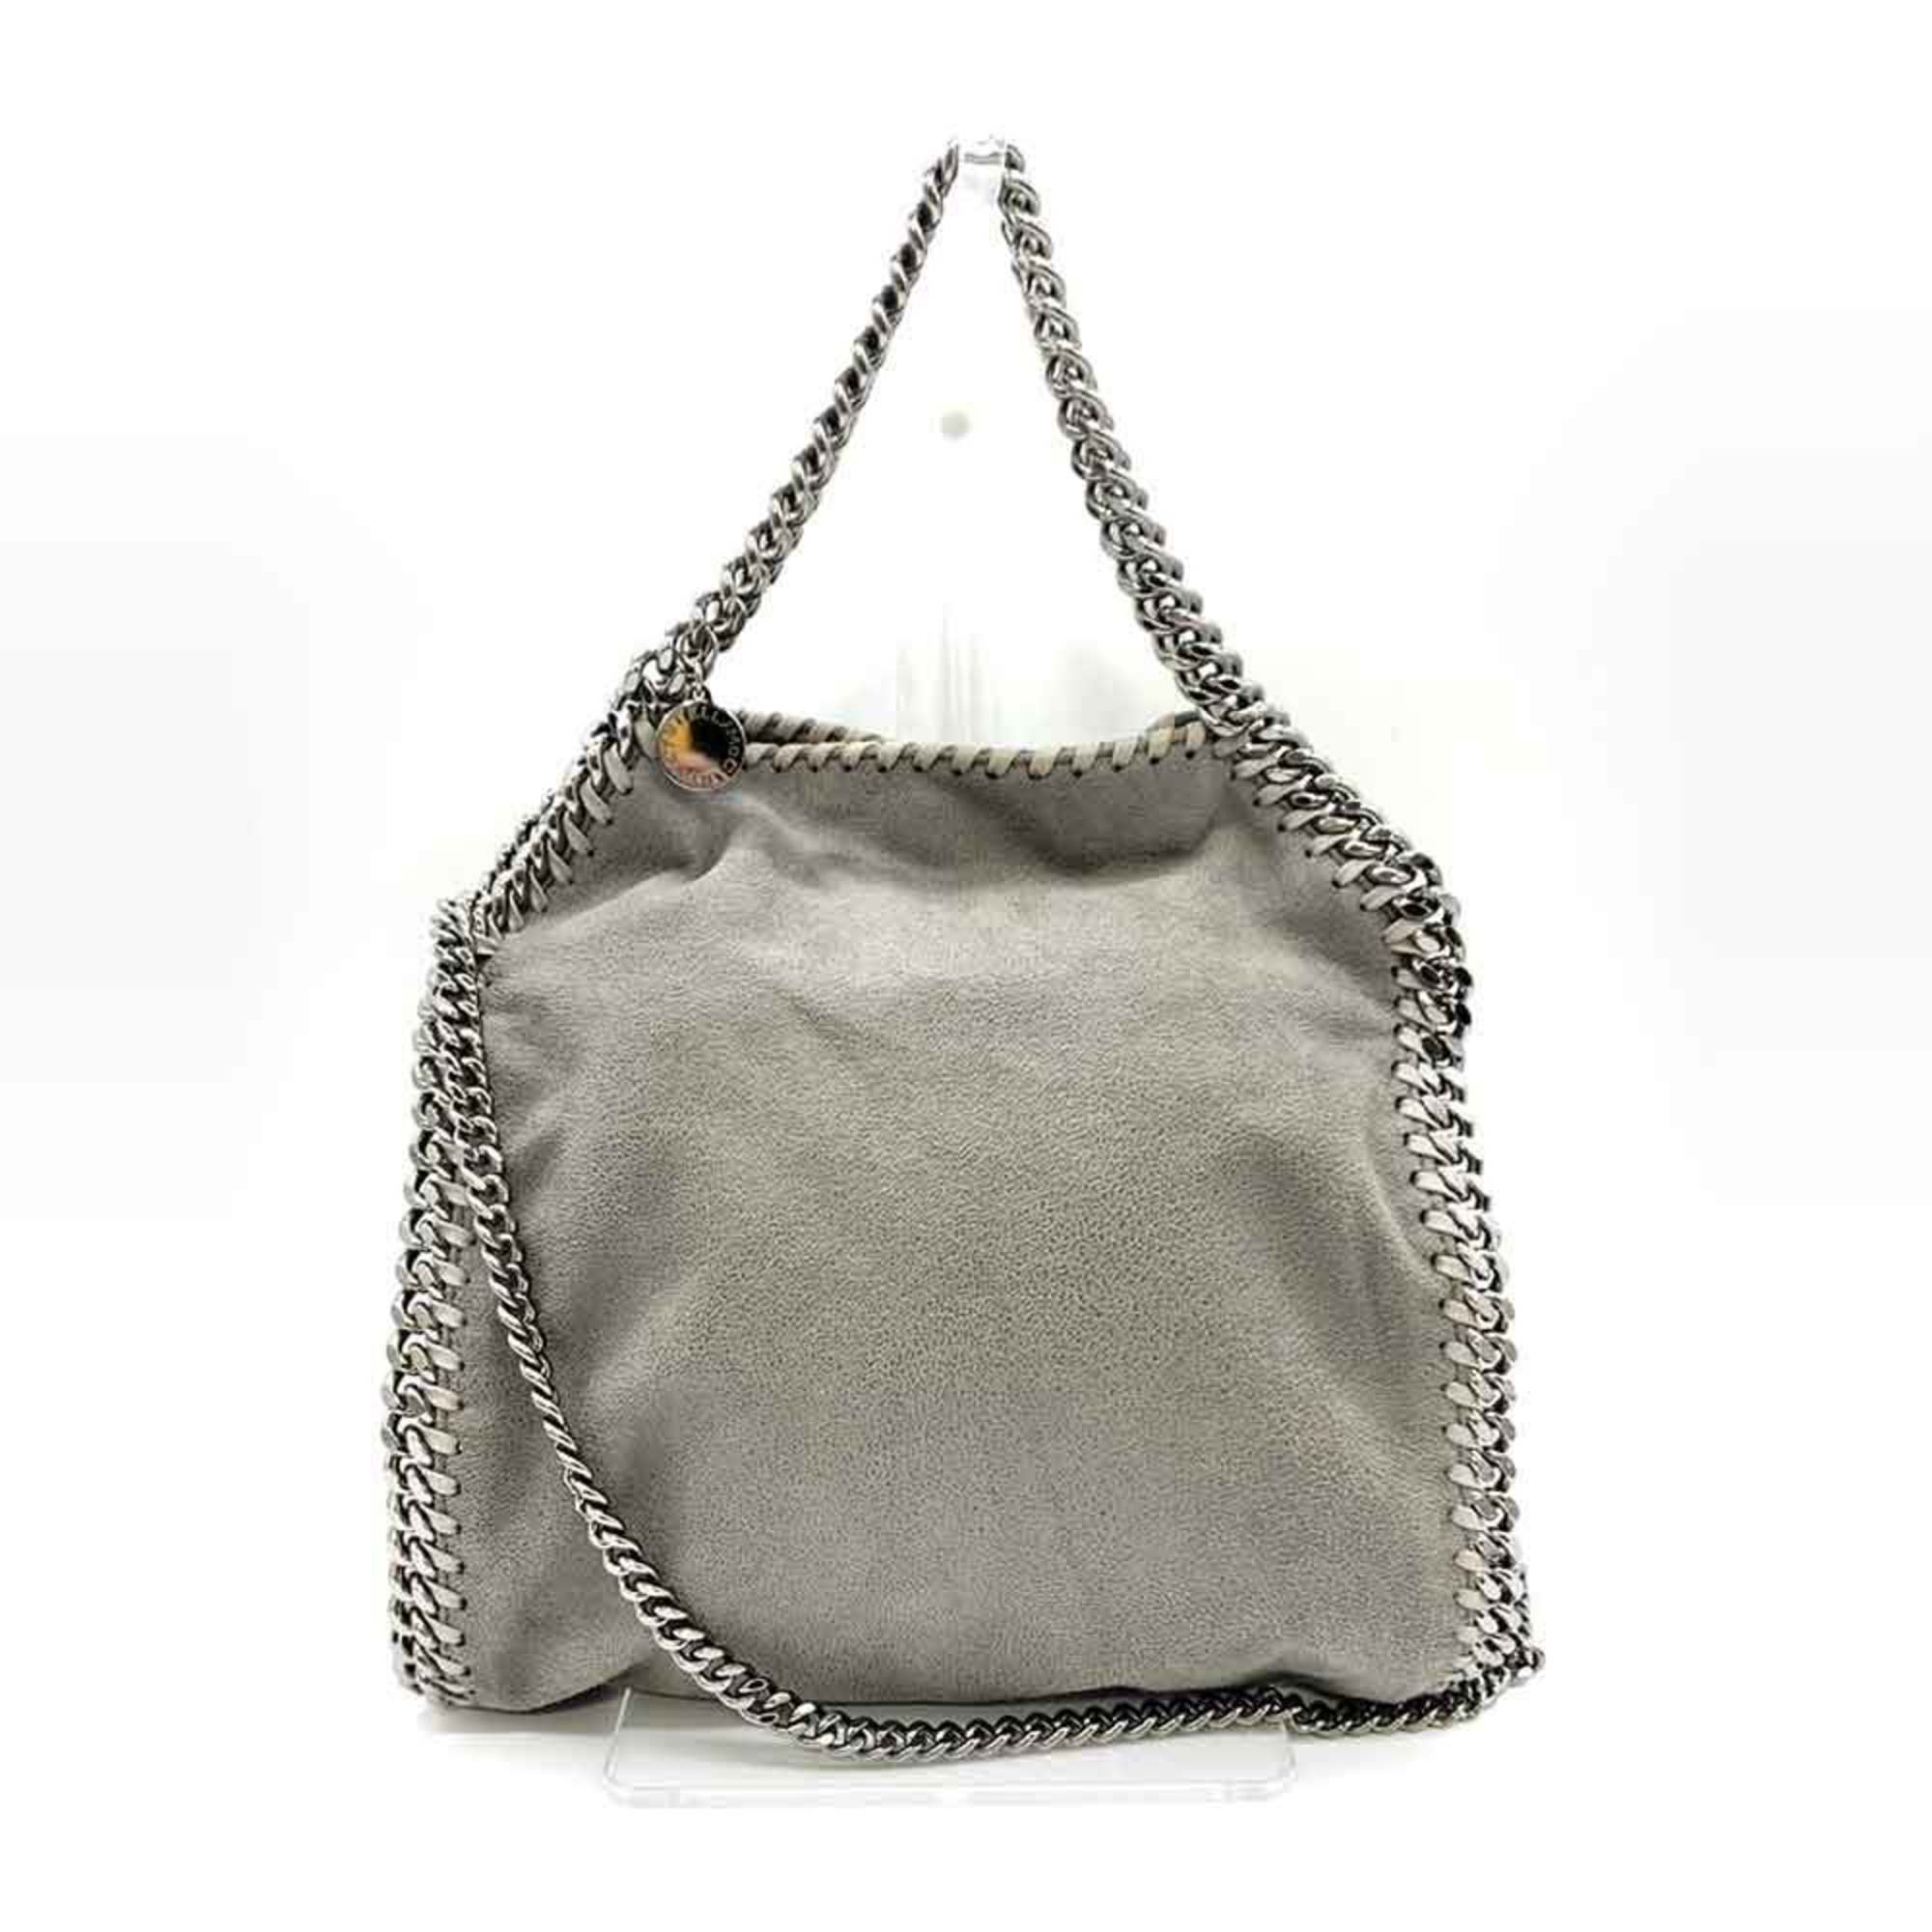 Stella McCartney Bag Falabella Chain Shoulder Grey Handbag 2way Women's Faux Leather 371223 STELLAMcCARTNEY